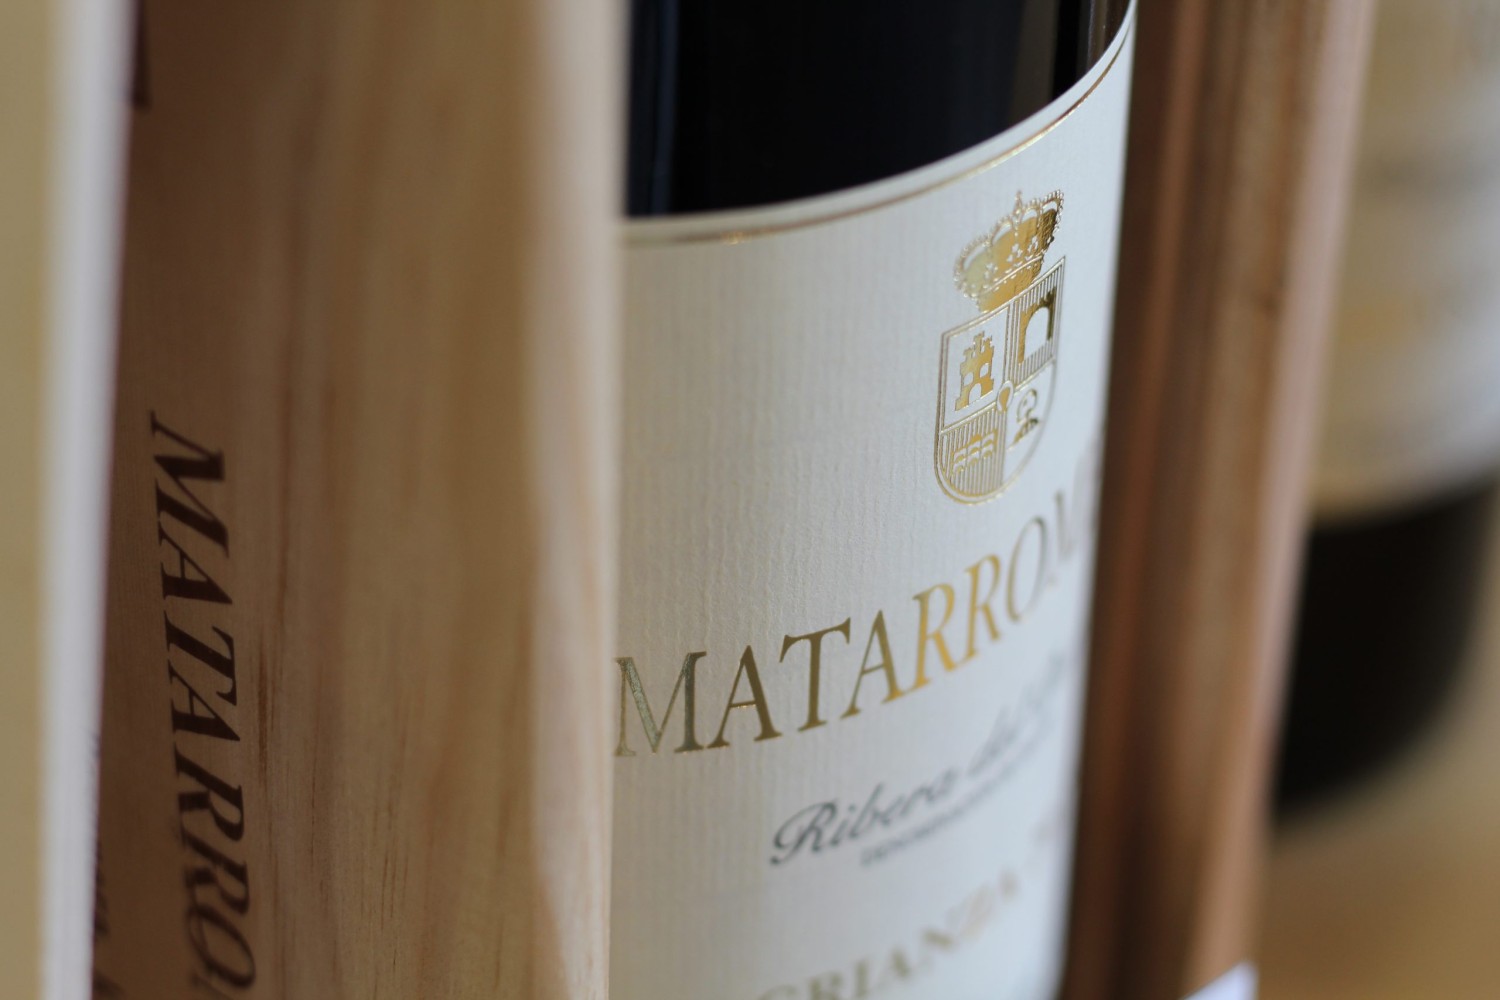 Matarromera Crianza, entre los 100 mejores vinos del mundo, según Wine Spectator